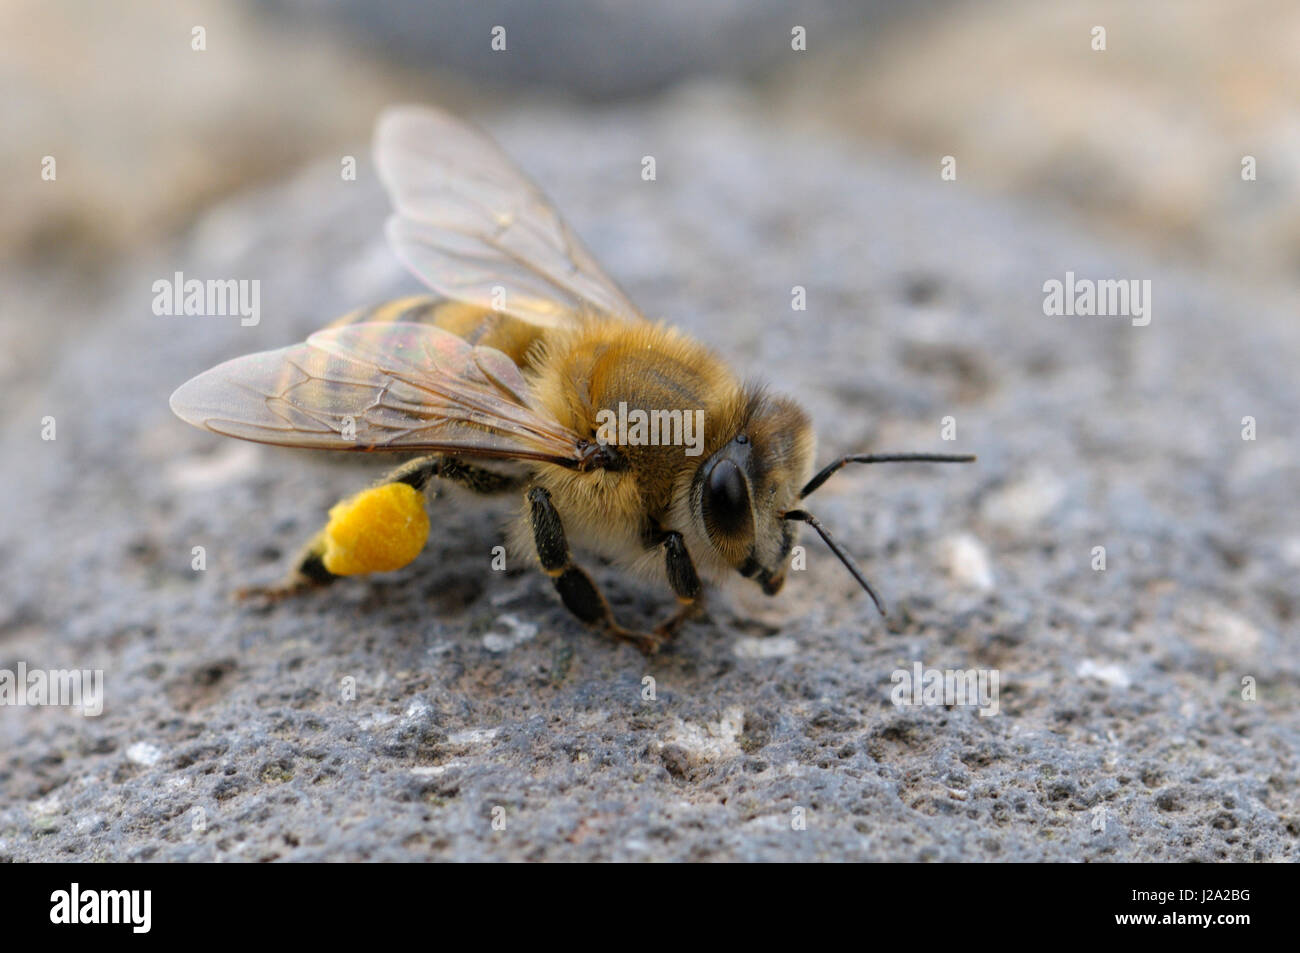 western honey bee heavy loaden with pollen Stock Photo